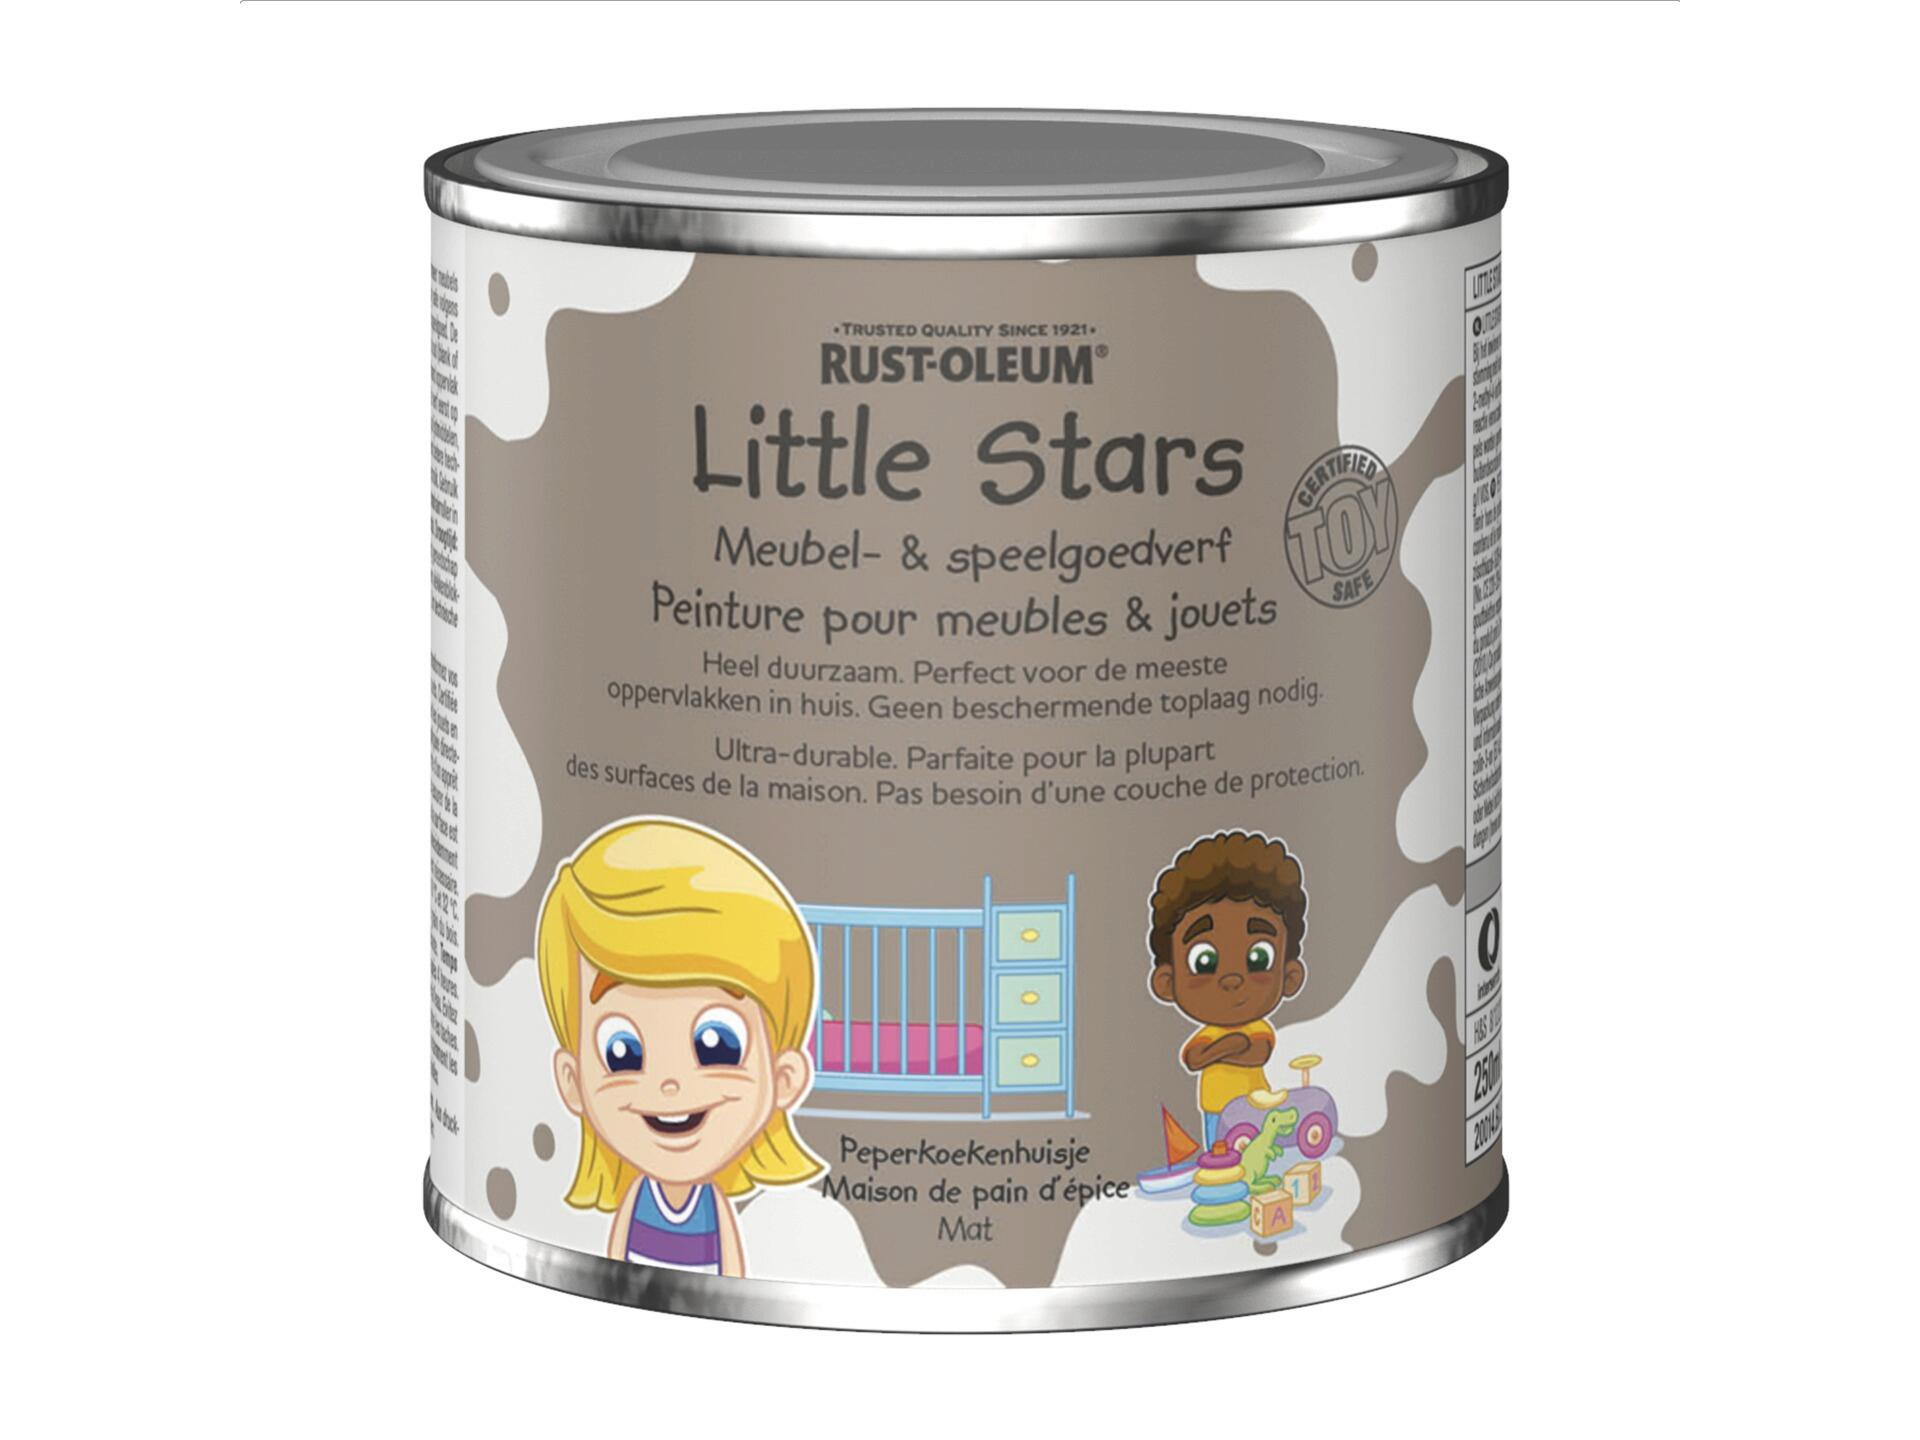 Rust-oleum Little Stars peinture pour meubles et jouets 250ml maison de pain d'épice